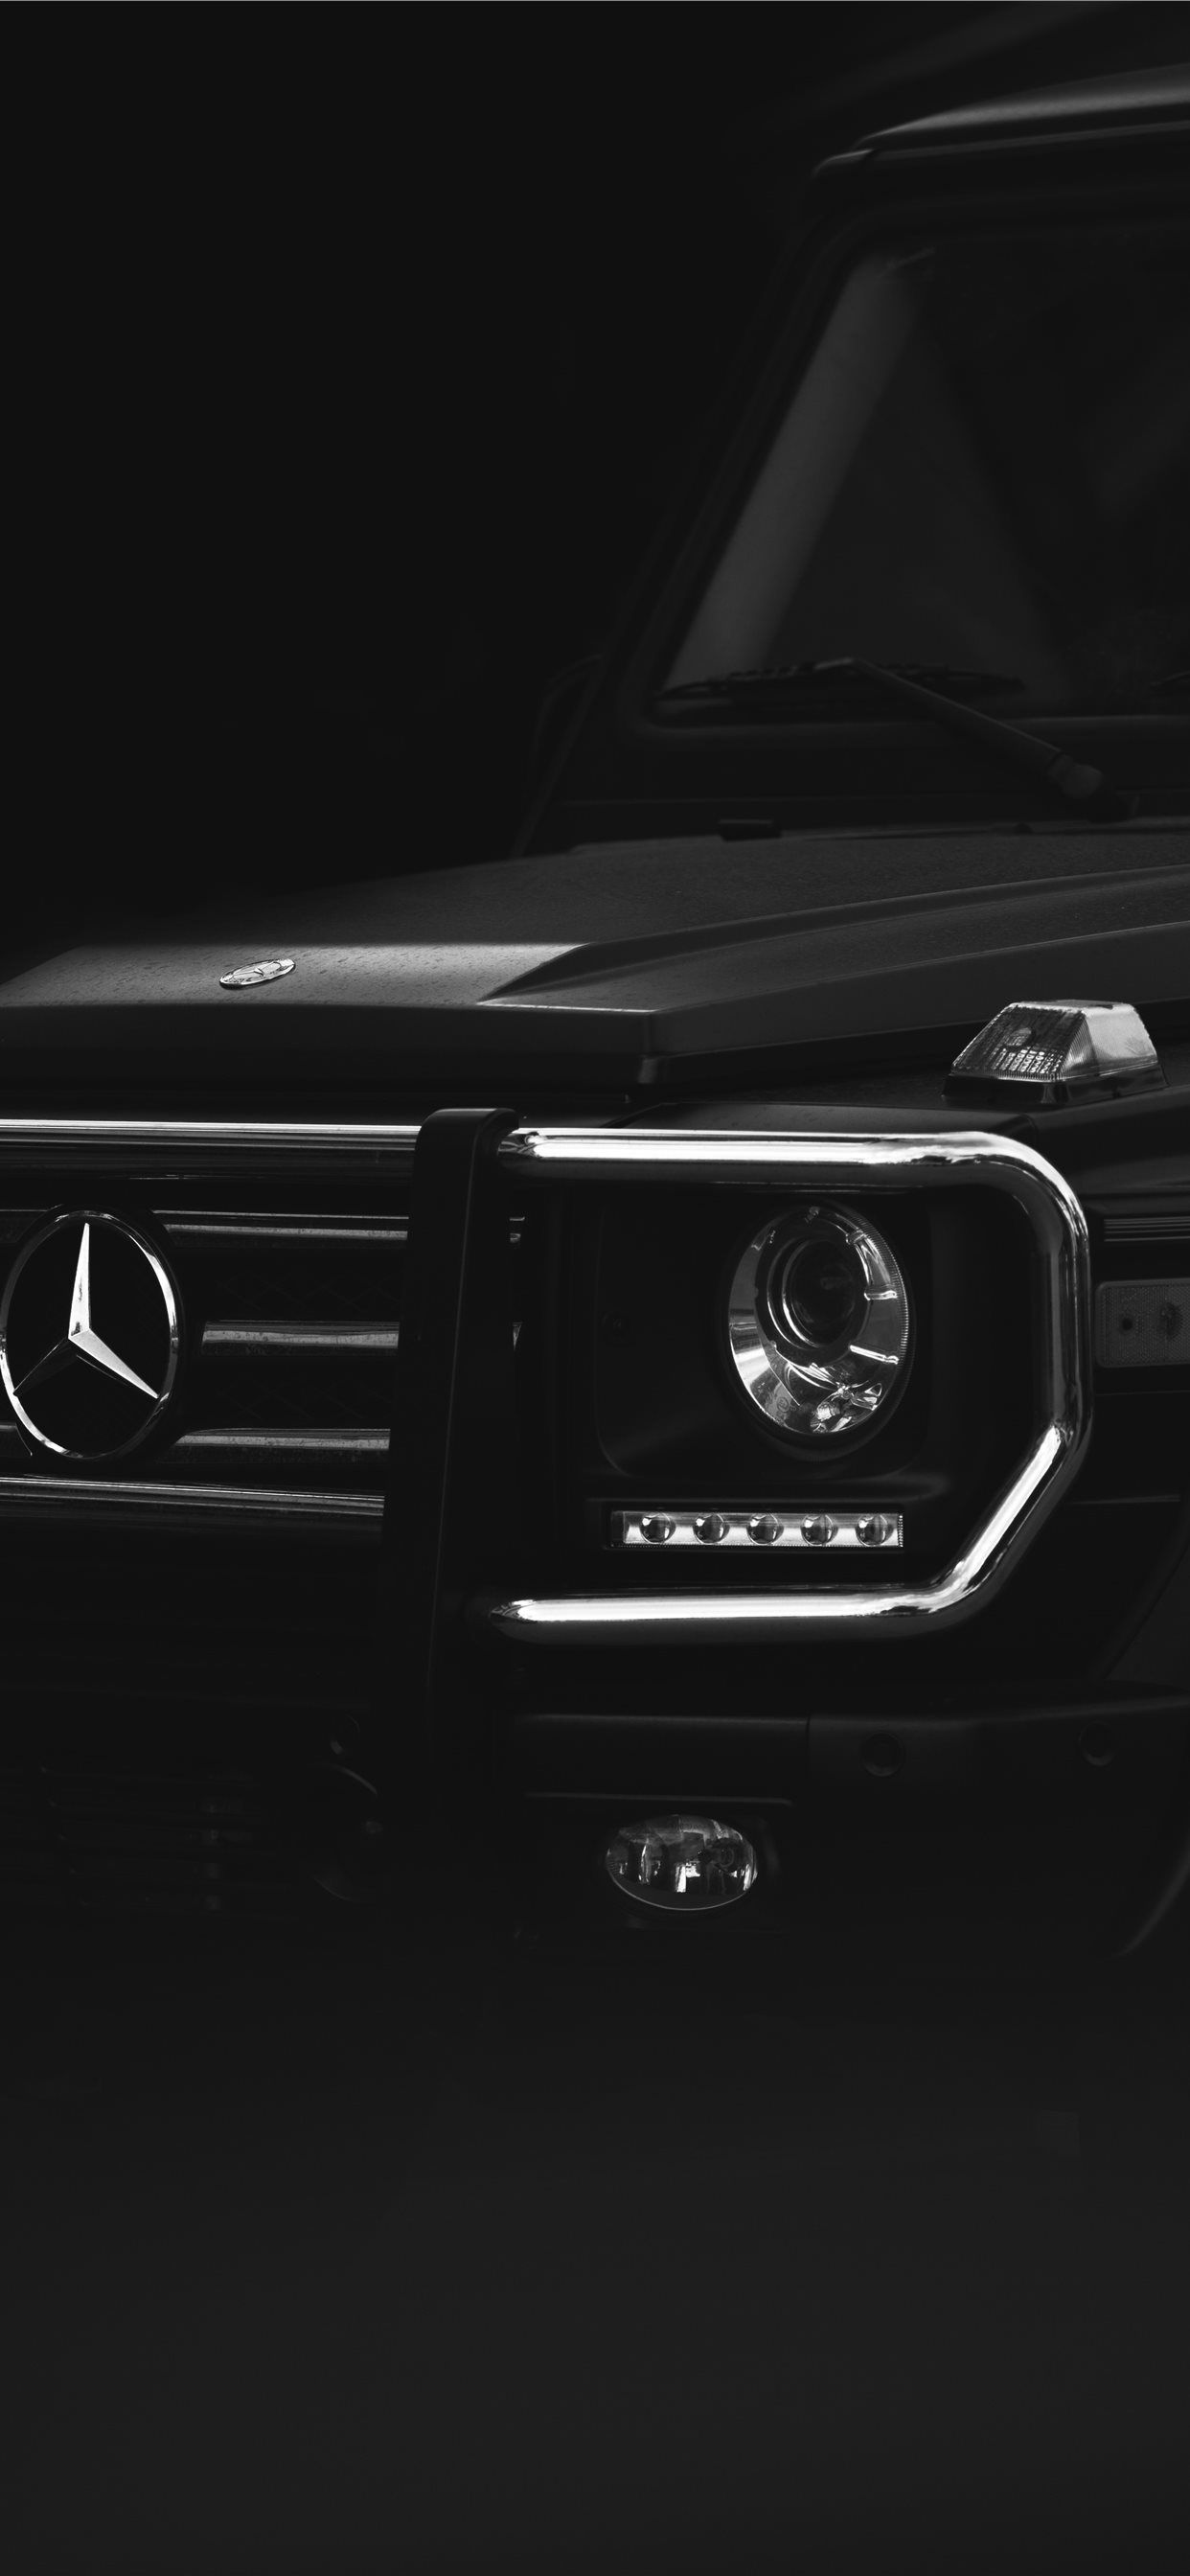 black Mercedes Benz car iPhone Wallpaper Free Download